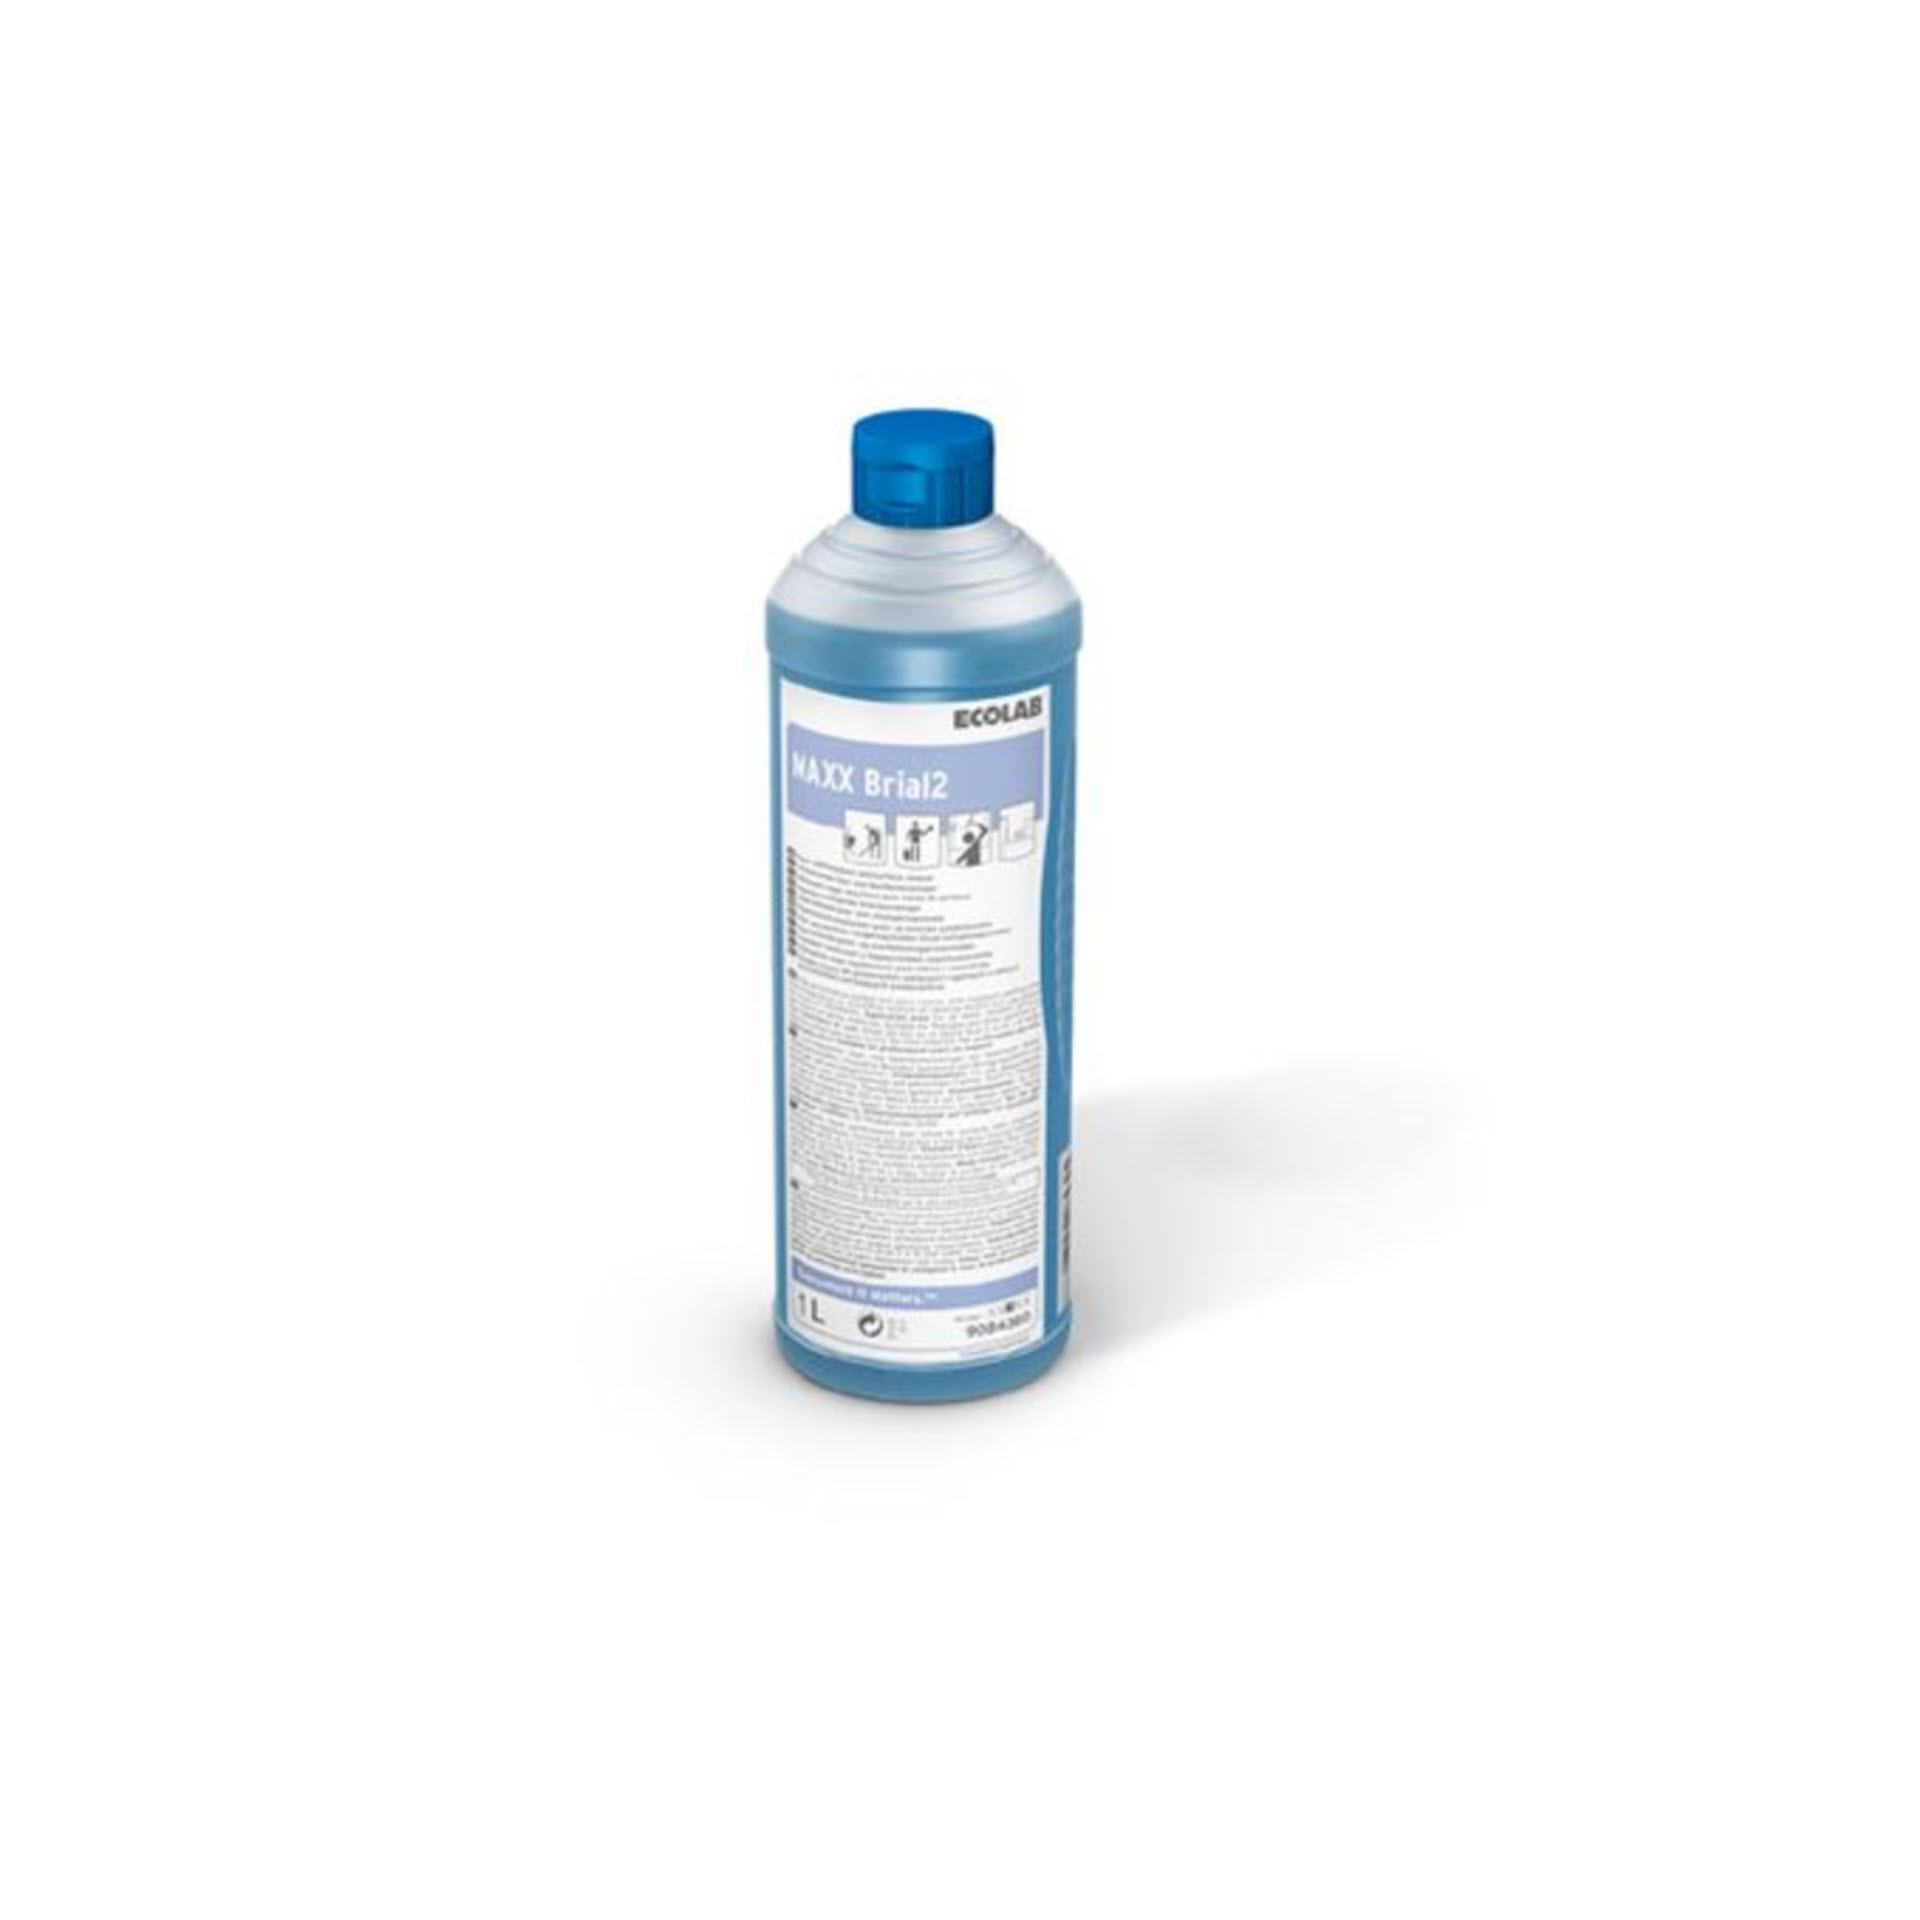 Ecolab MAXX Brial 2  Glas- und Oberflächenreiniger - 1 Liter Rundflasche